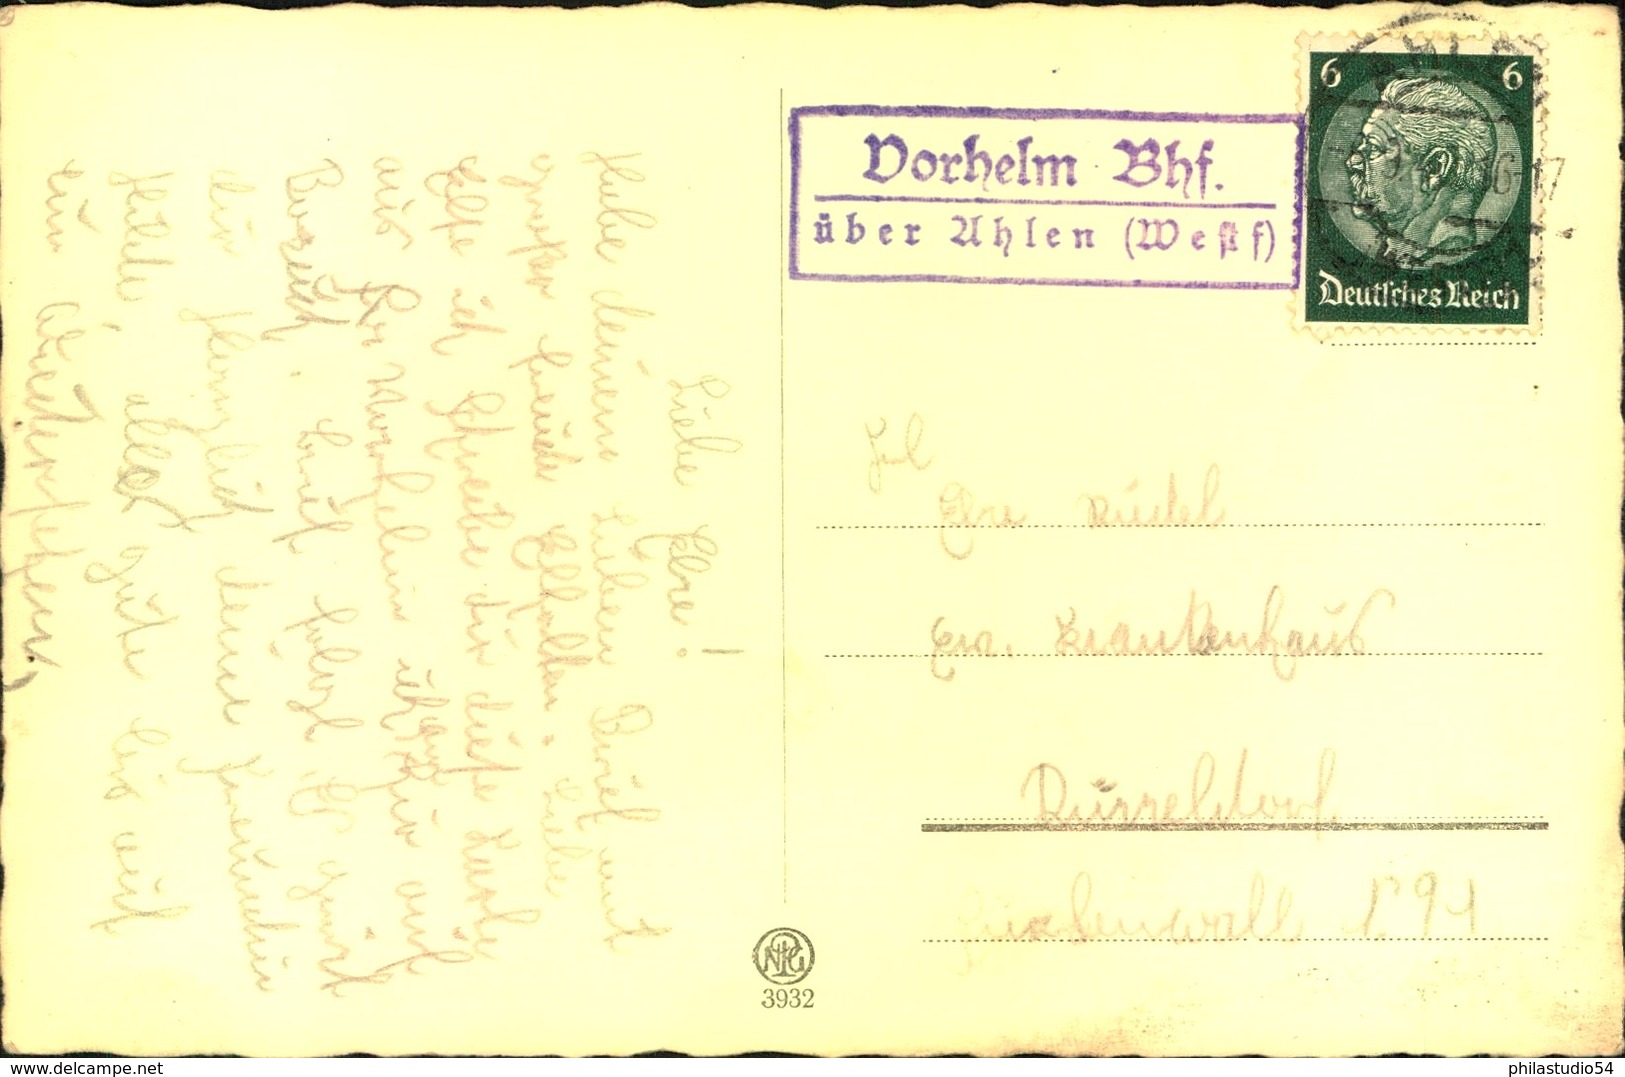 1936, Poststellenstempel "Vorheim Bhf über Ahlen (Westf) - Máquinas Franqueo (EMA)